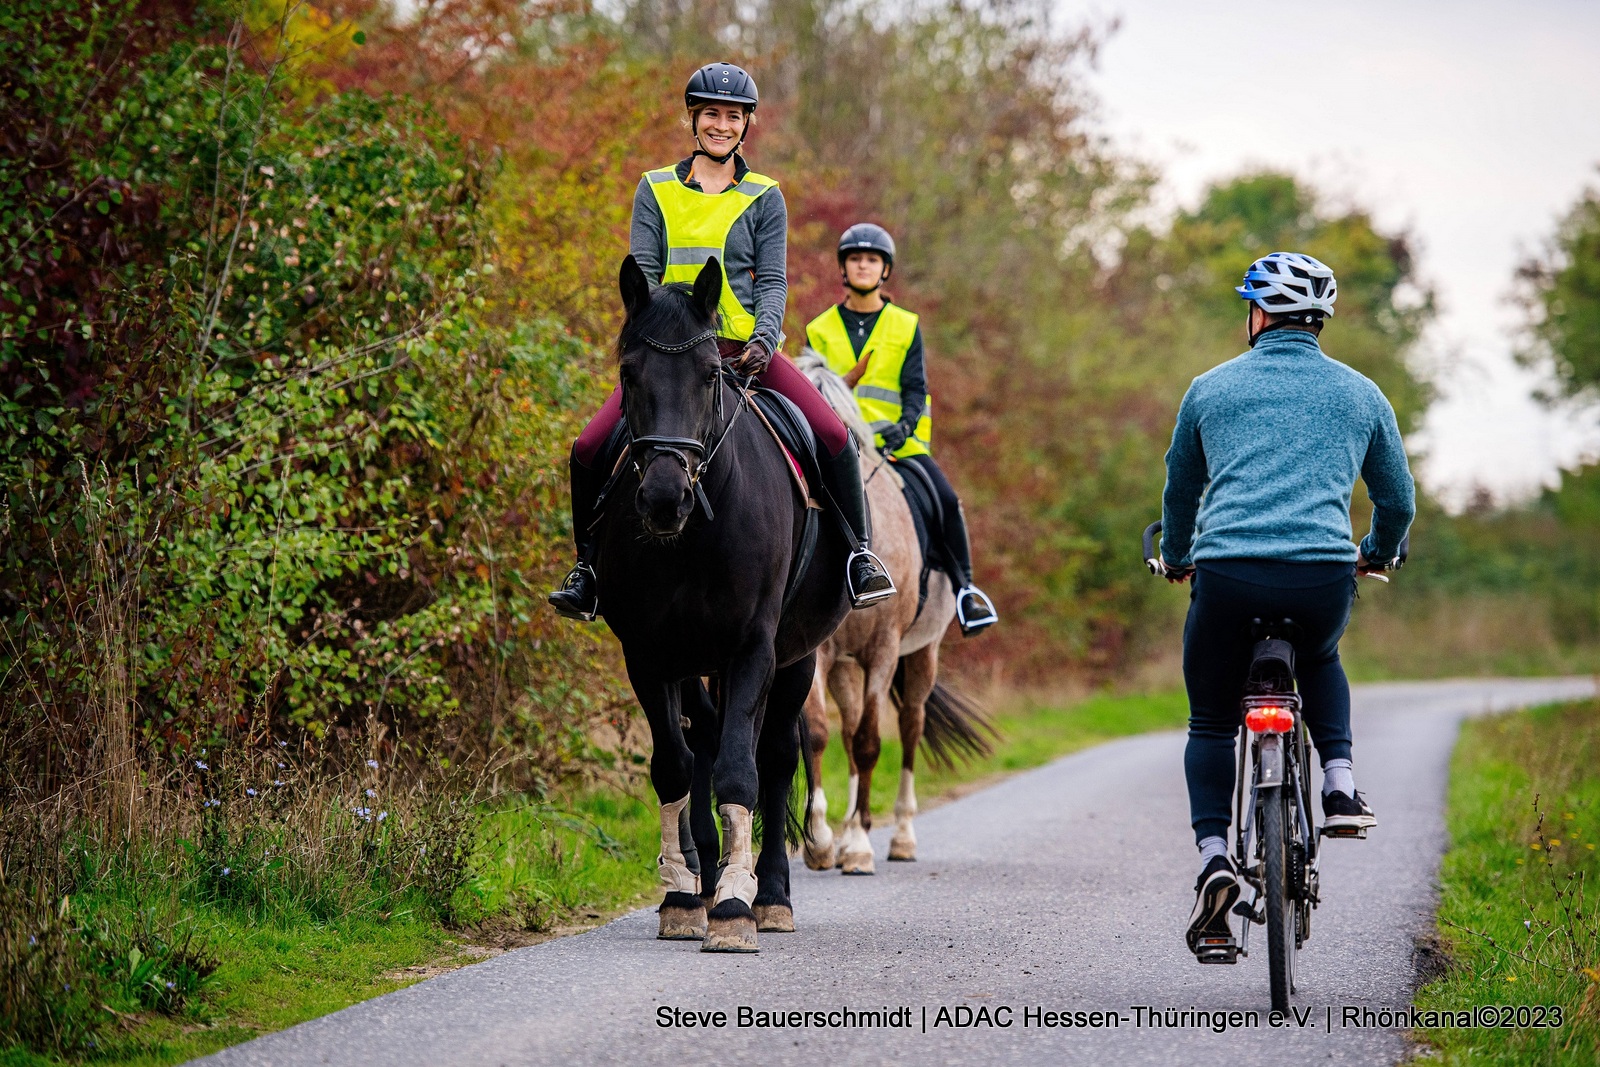 Pferde im Straßenverkehr – ADAC gibt Tipps für Sichtbarkeit & Sicherheit  von Tier & Reiter – Rhönkanal, Schafe Videos Online